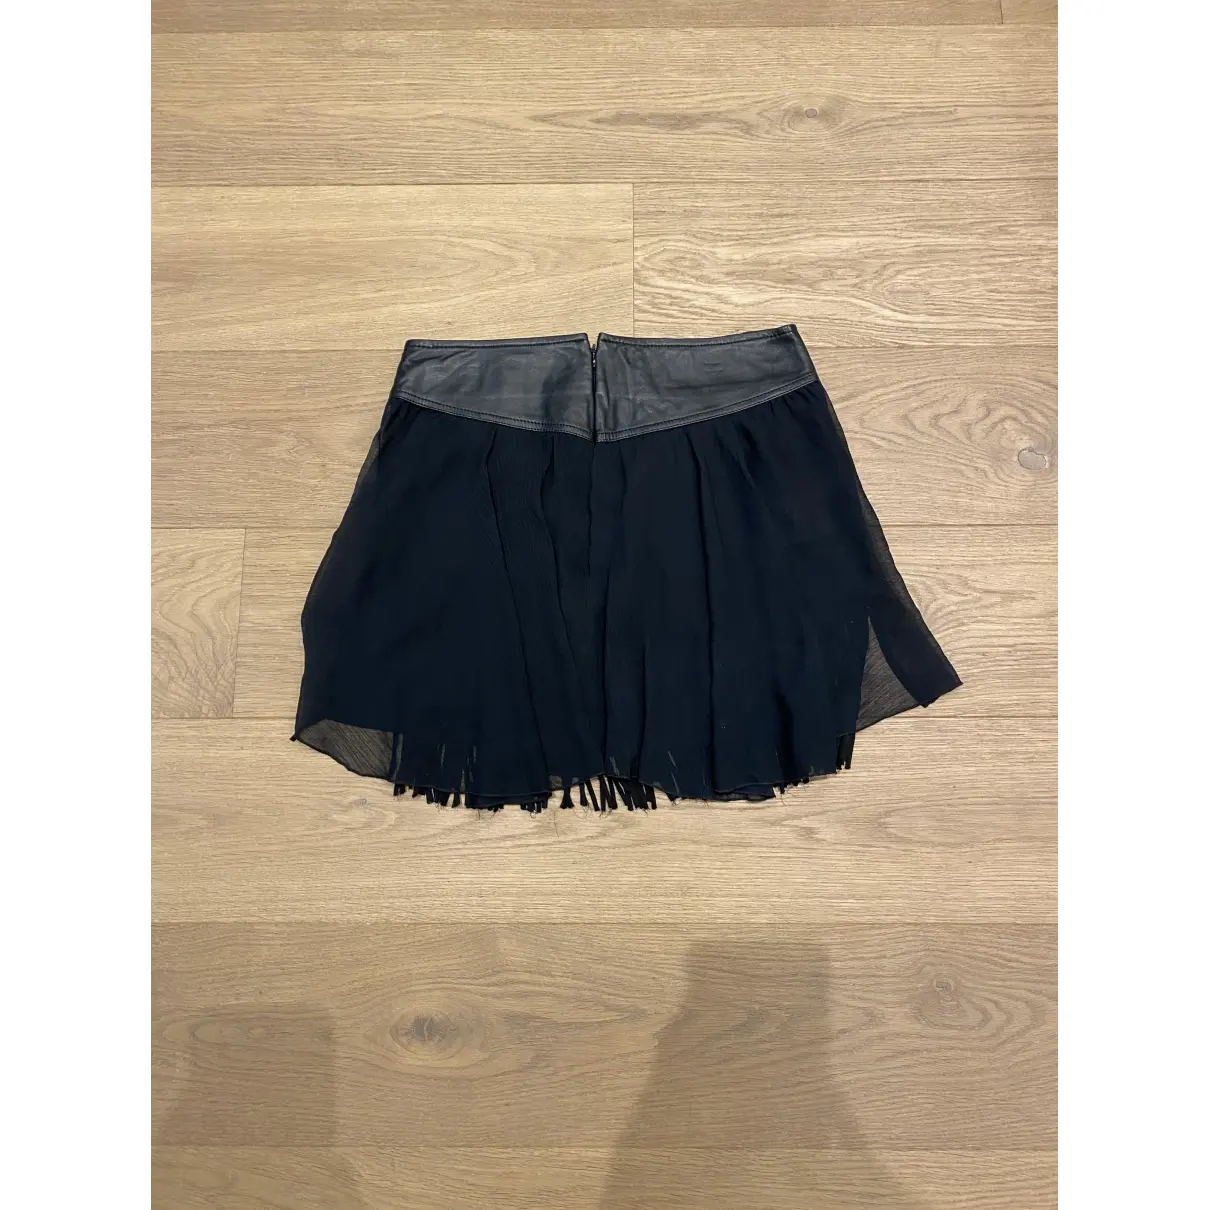 Diesel Mini skirt for sale